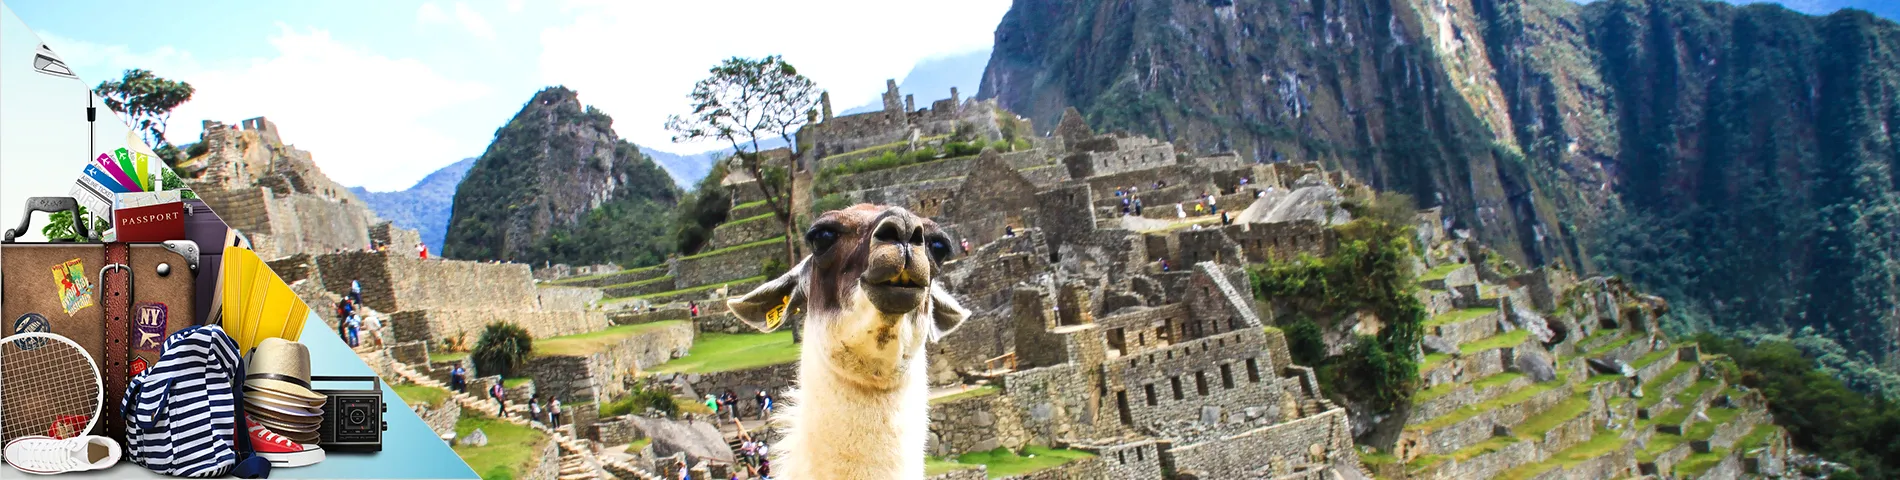 Peru - Spanish for Tourism